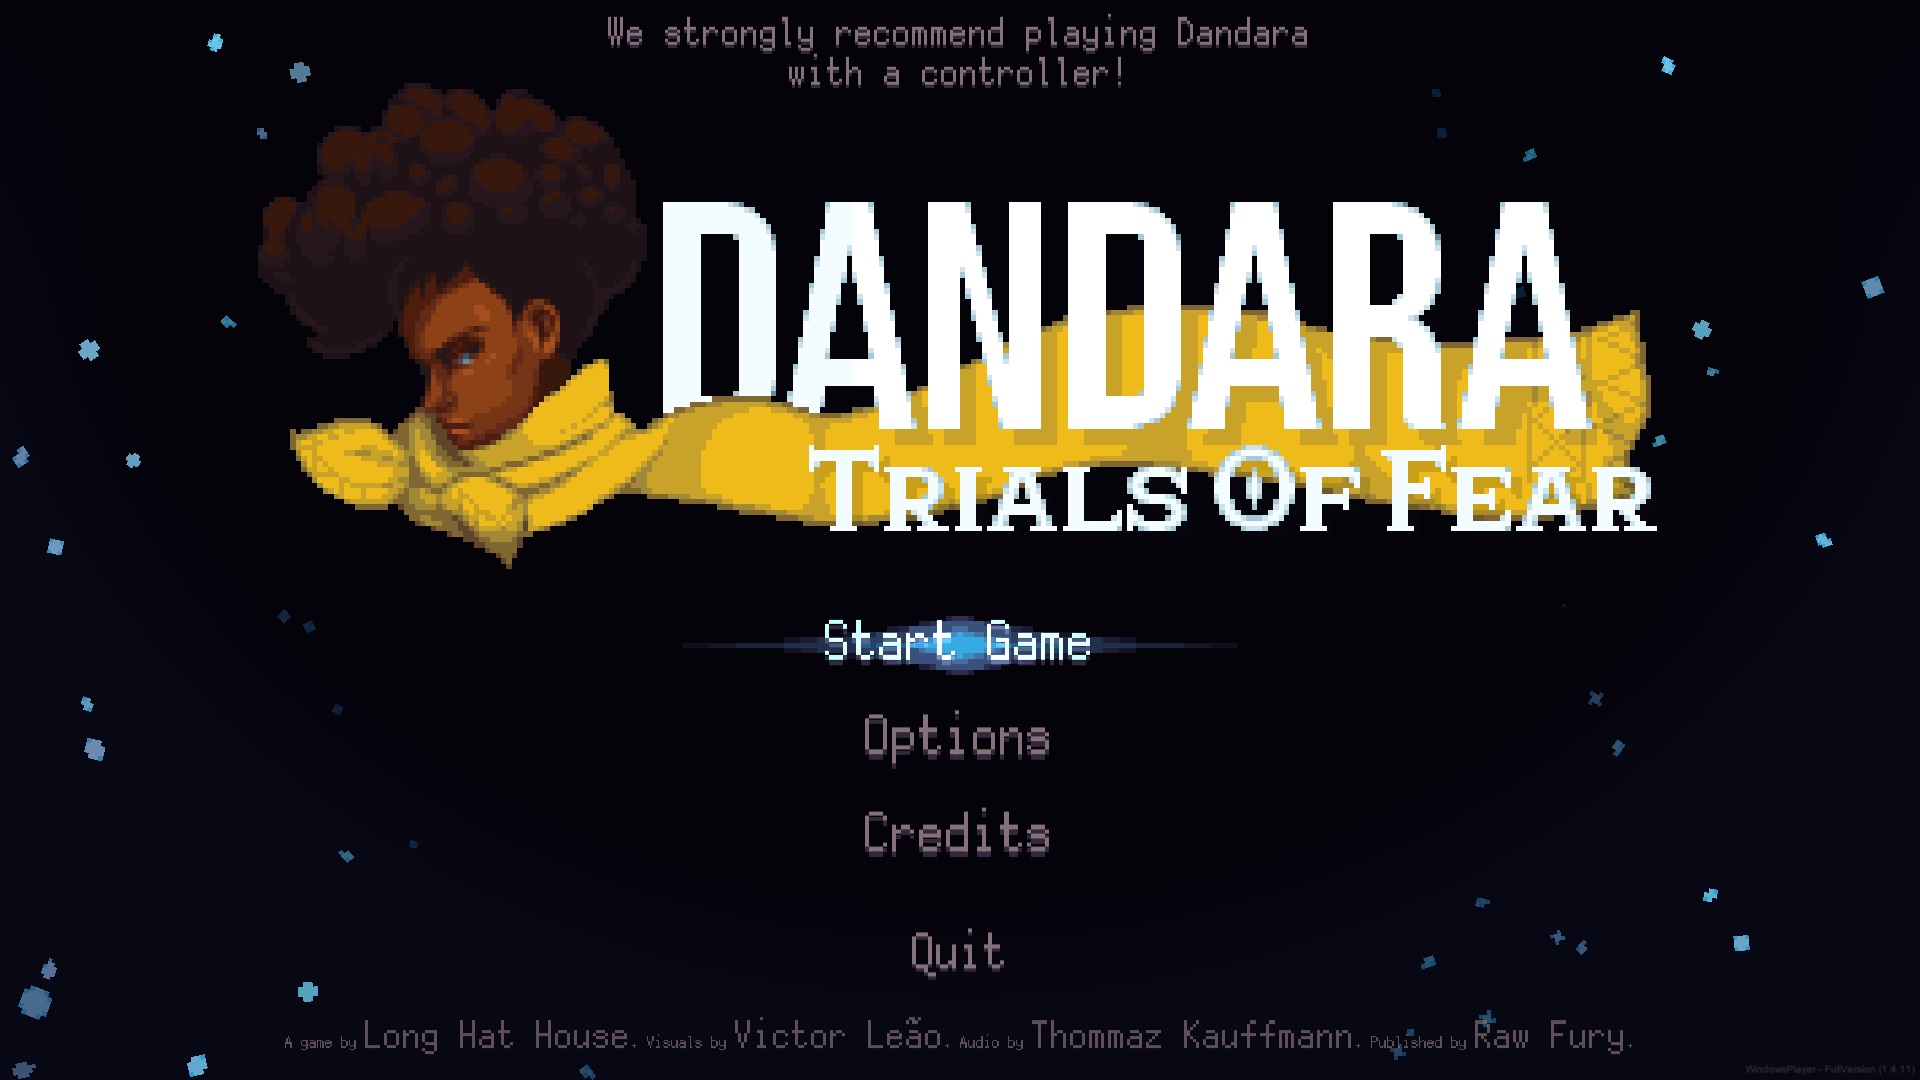 www dandara com download free